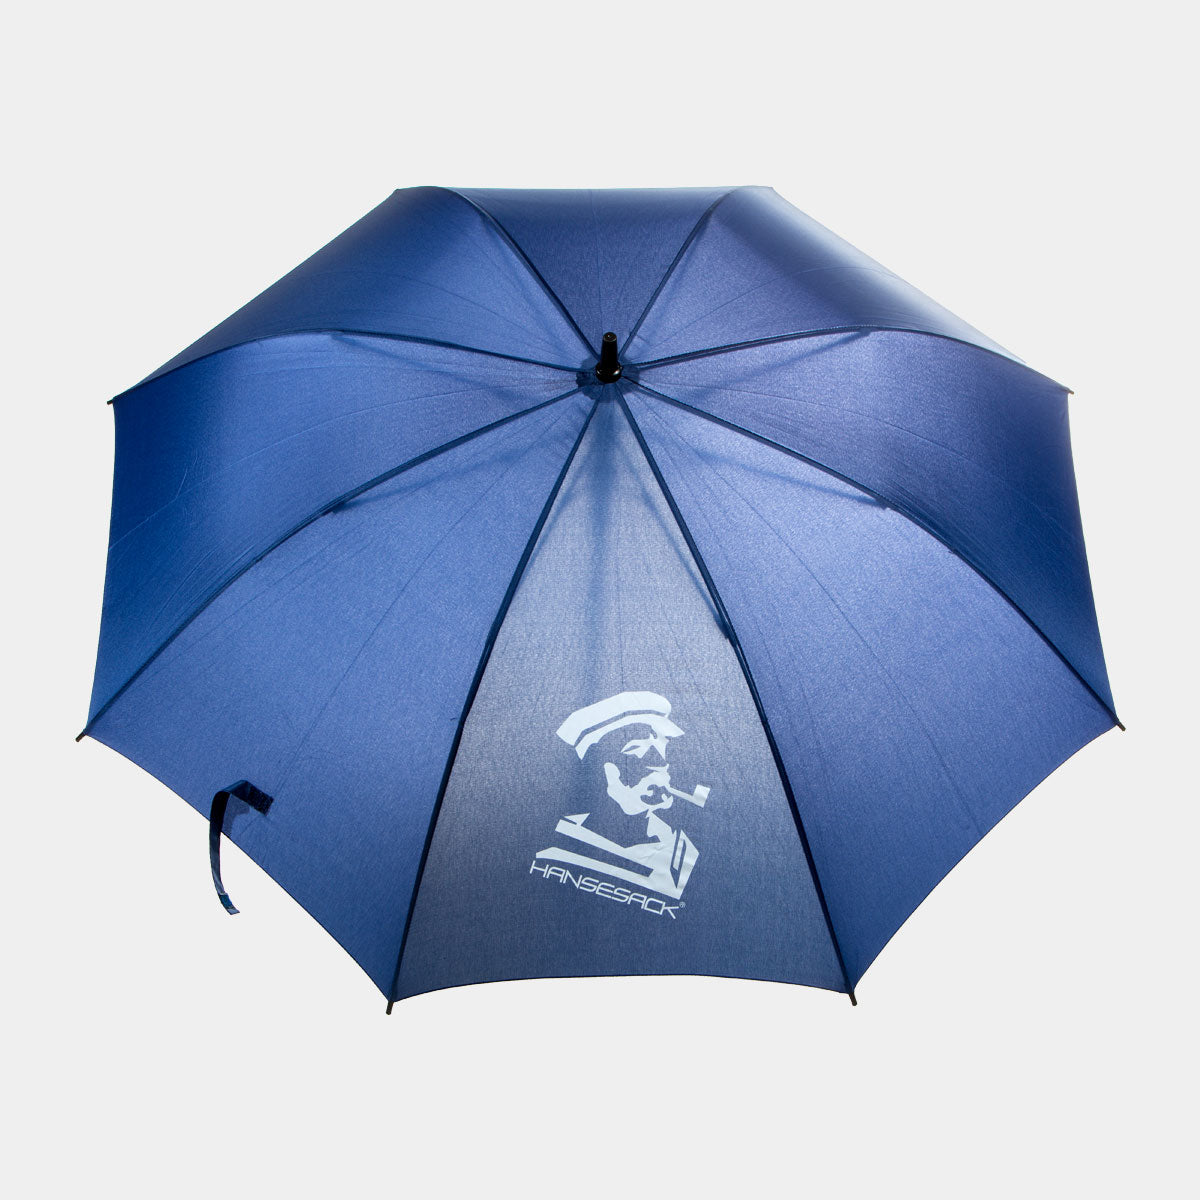 Hansesack Produktbild Regenschirm marine offen mit Hansesack Kopf Logo, von vorne